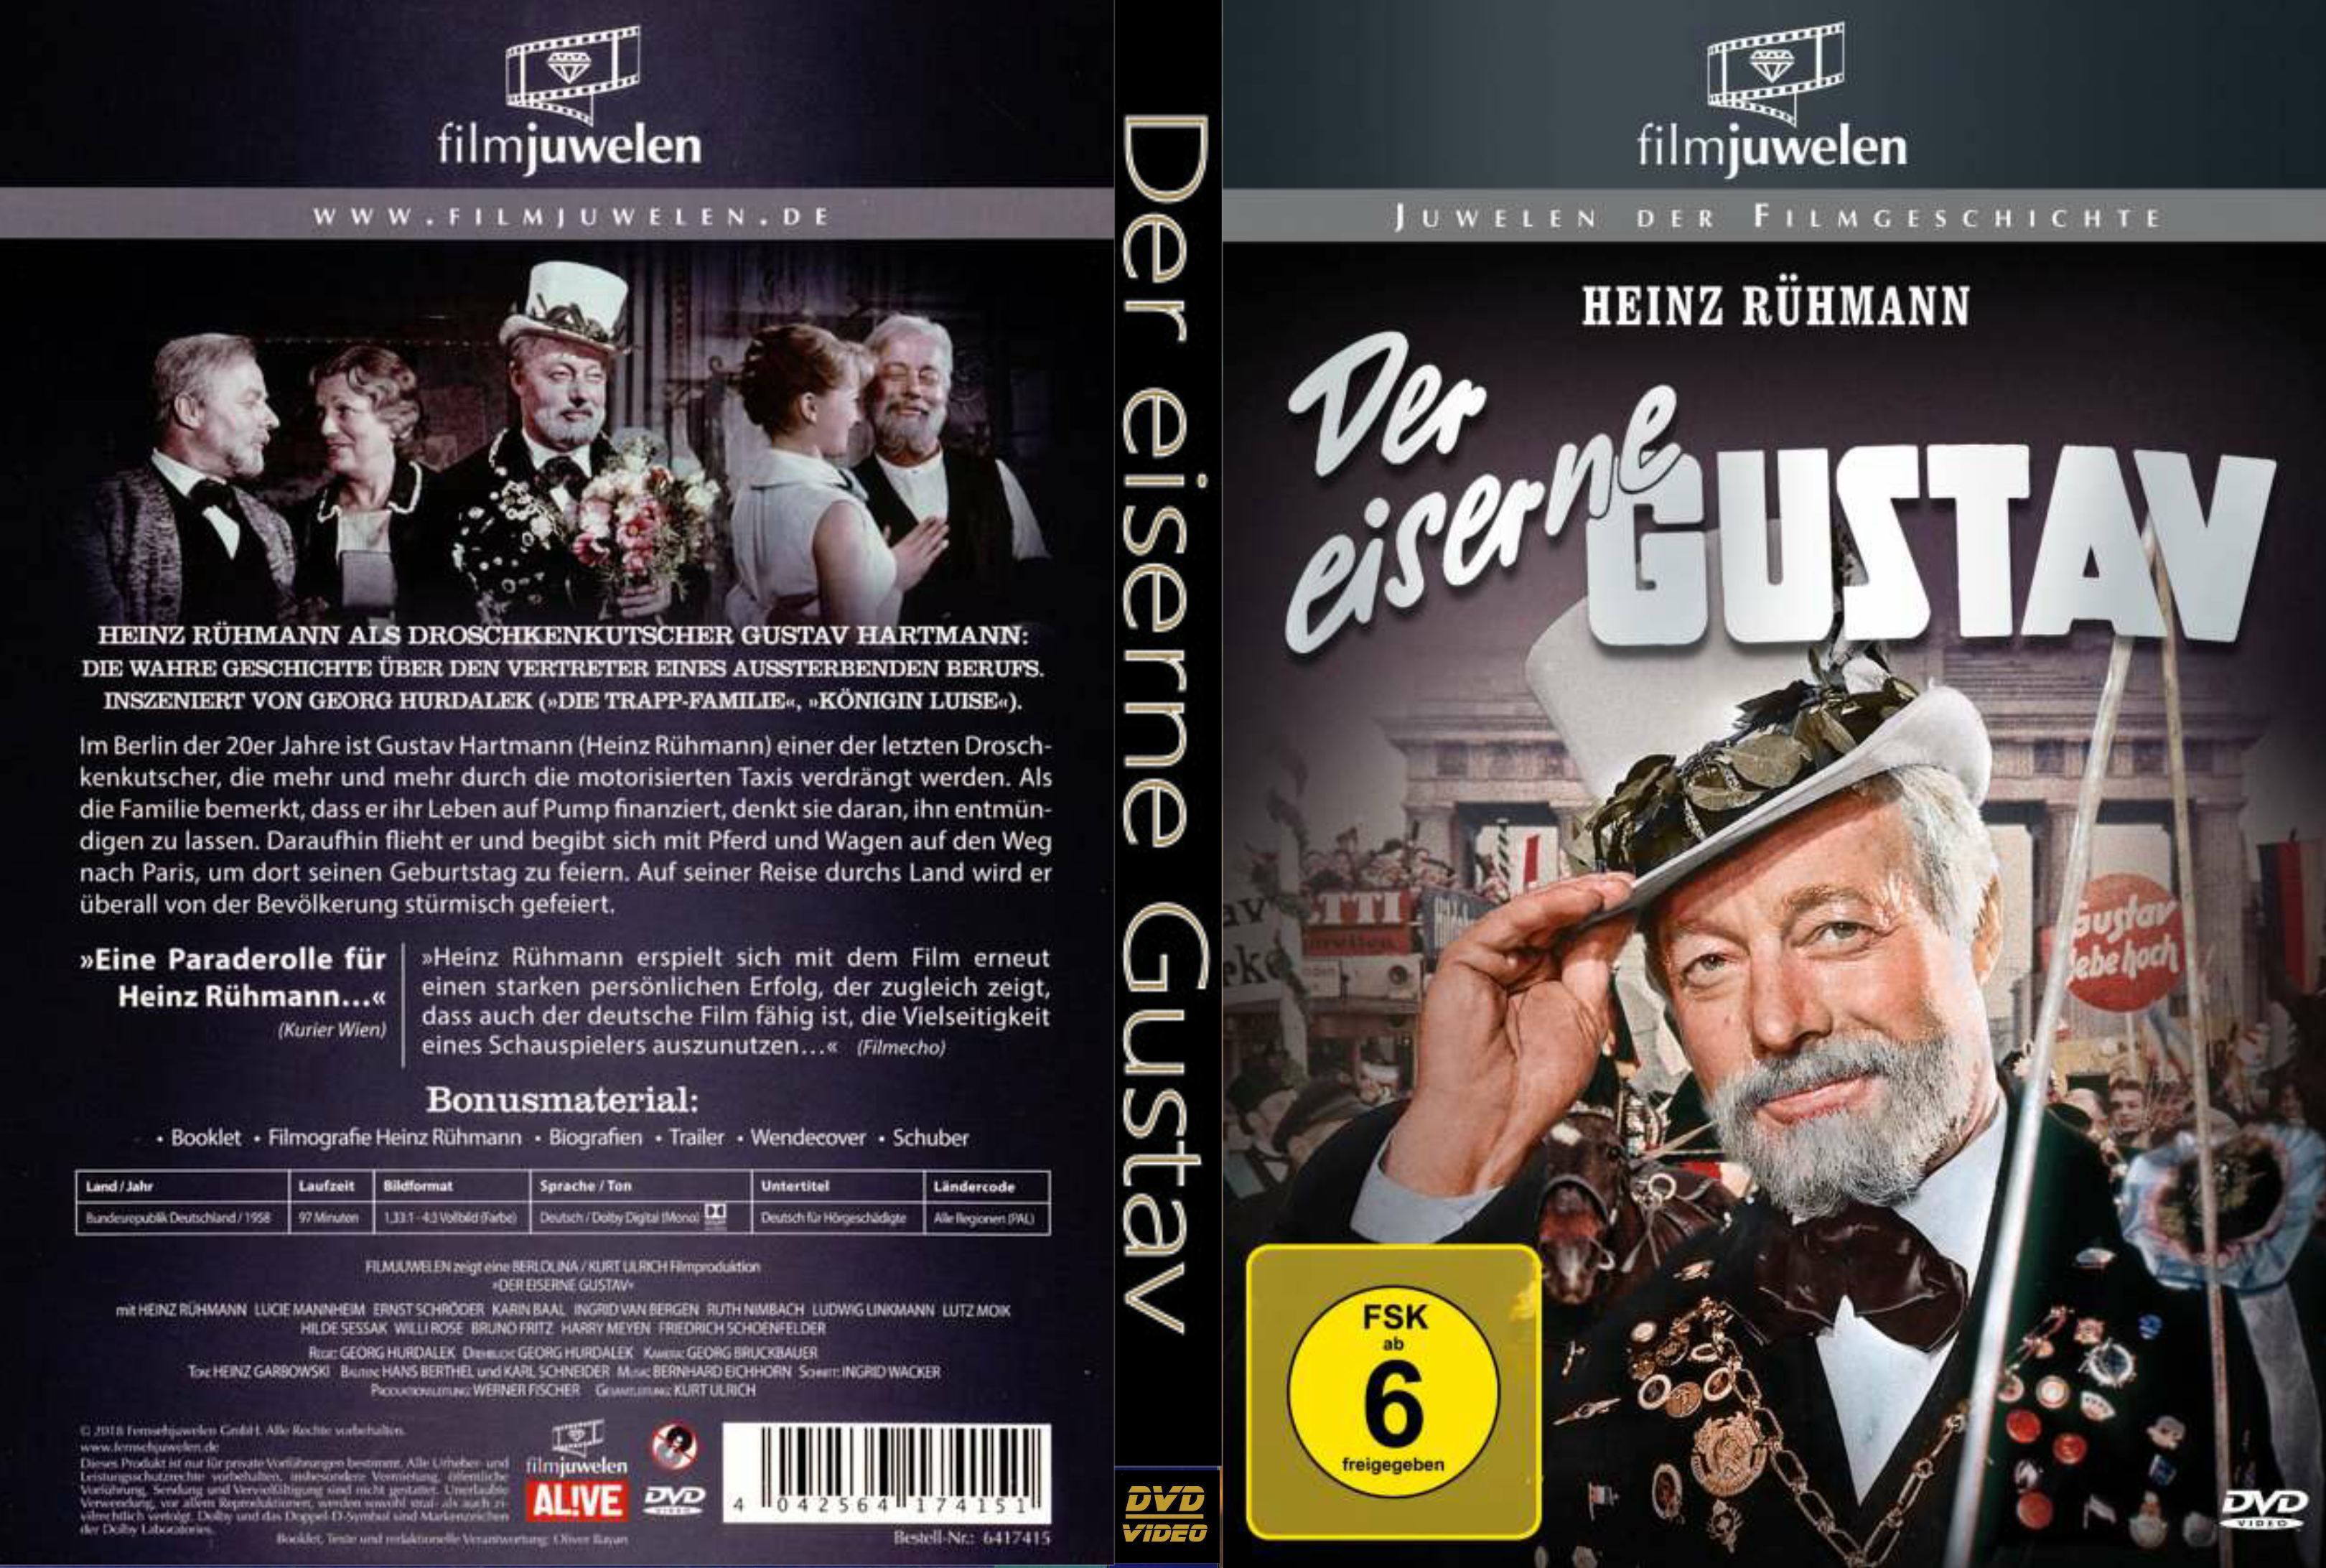 Der eiserne Gustav 1958 Heinz Ruhmann REMASTERED